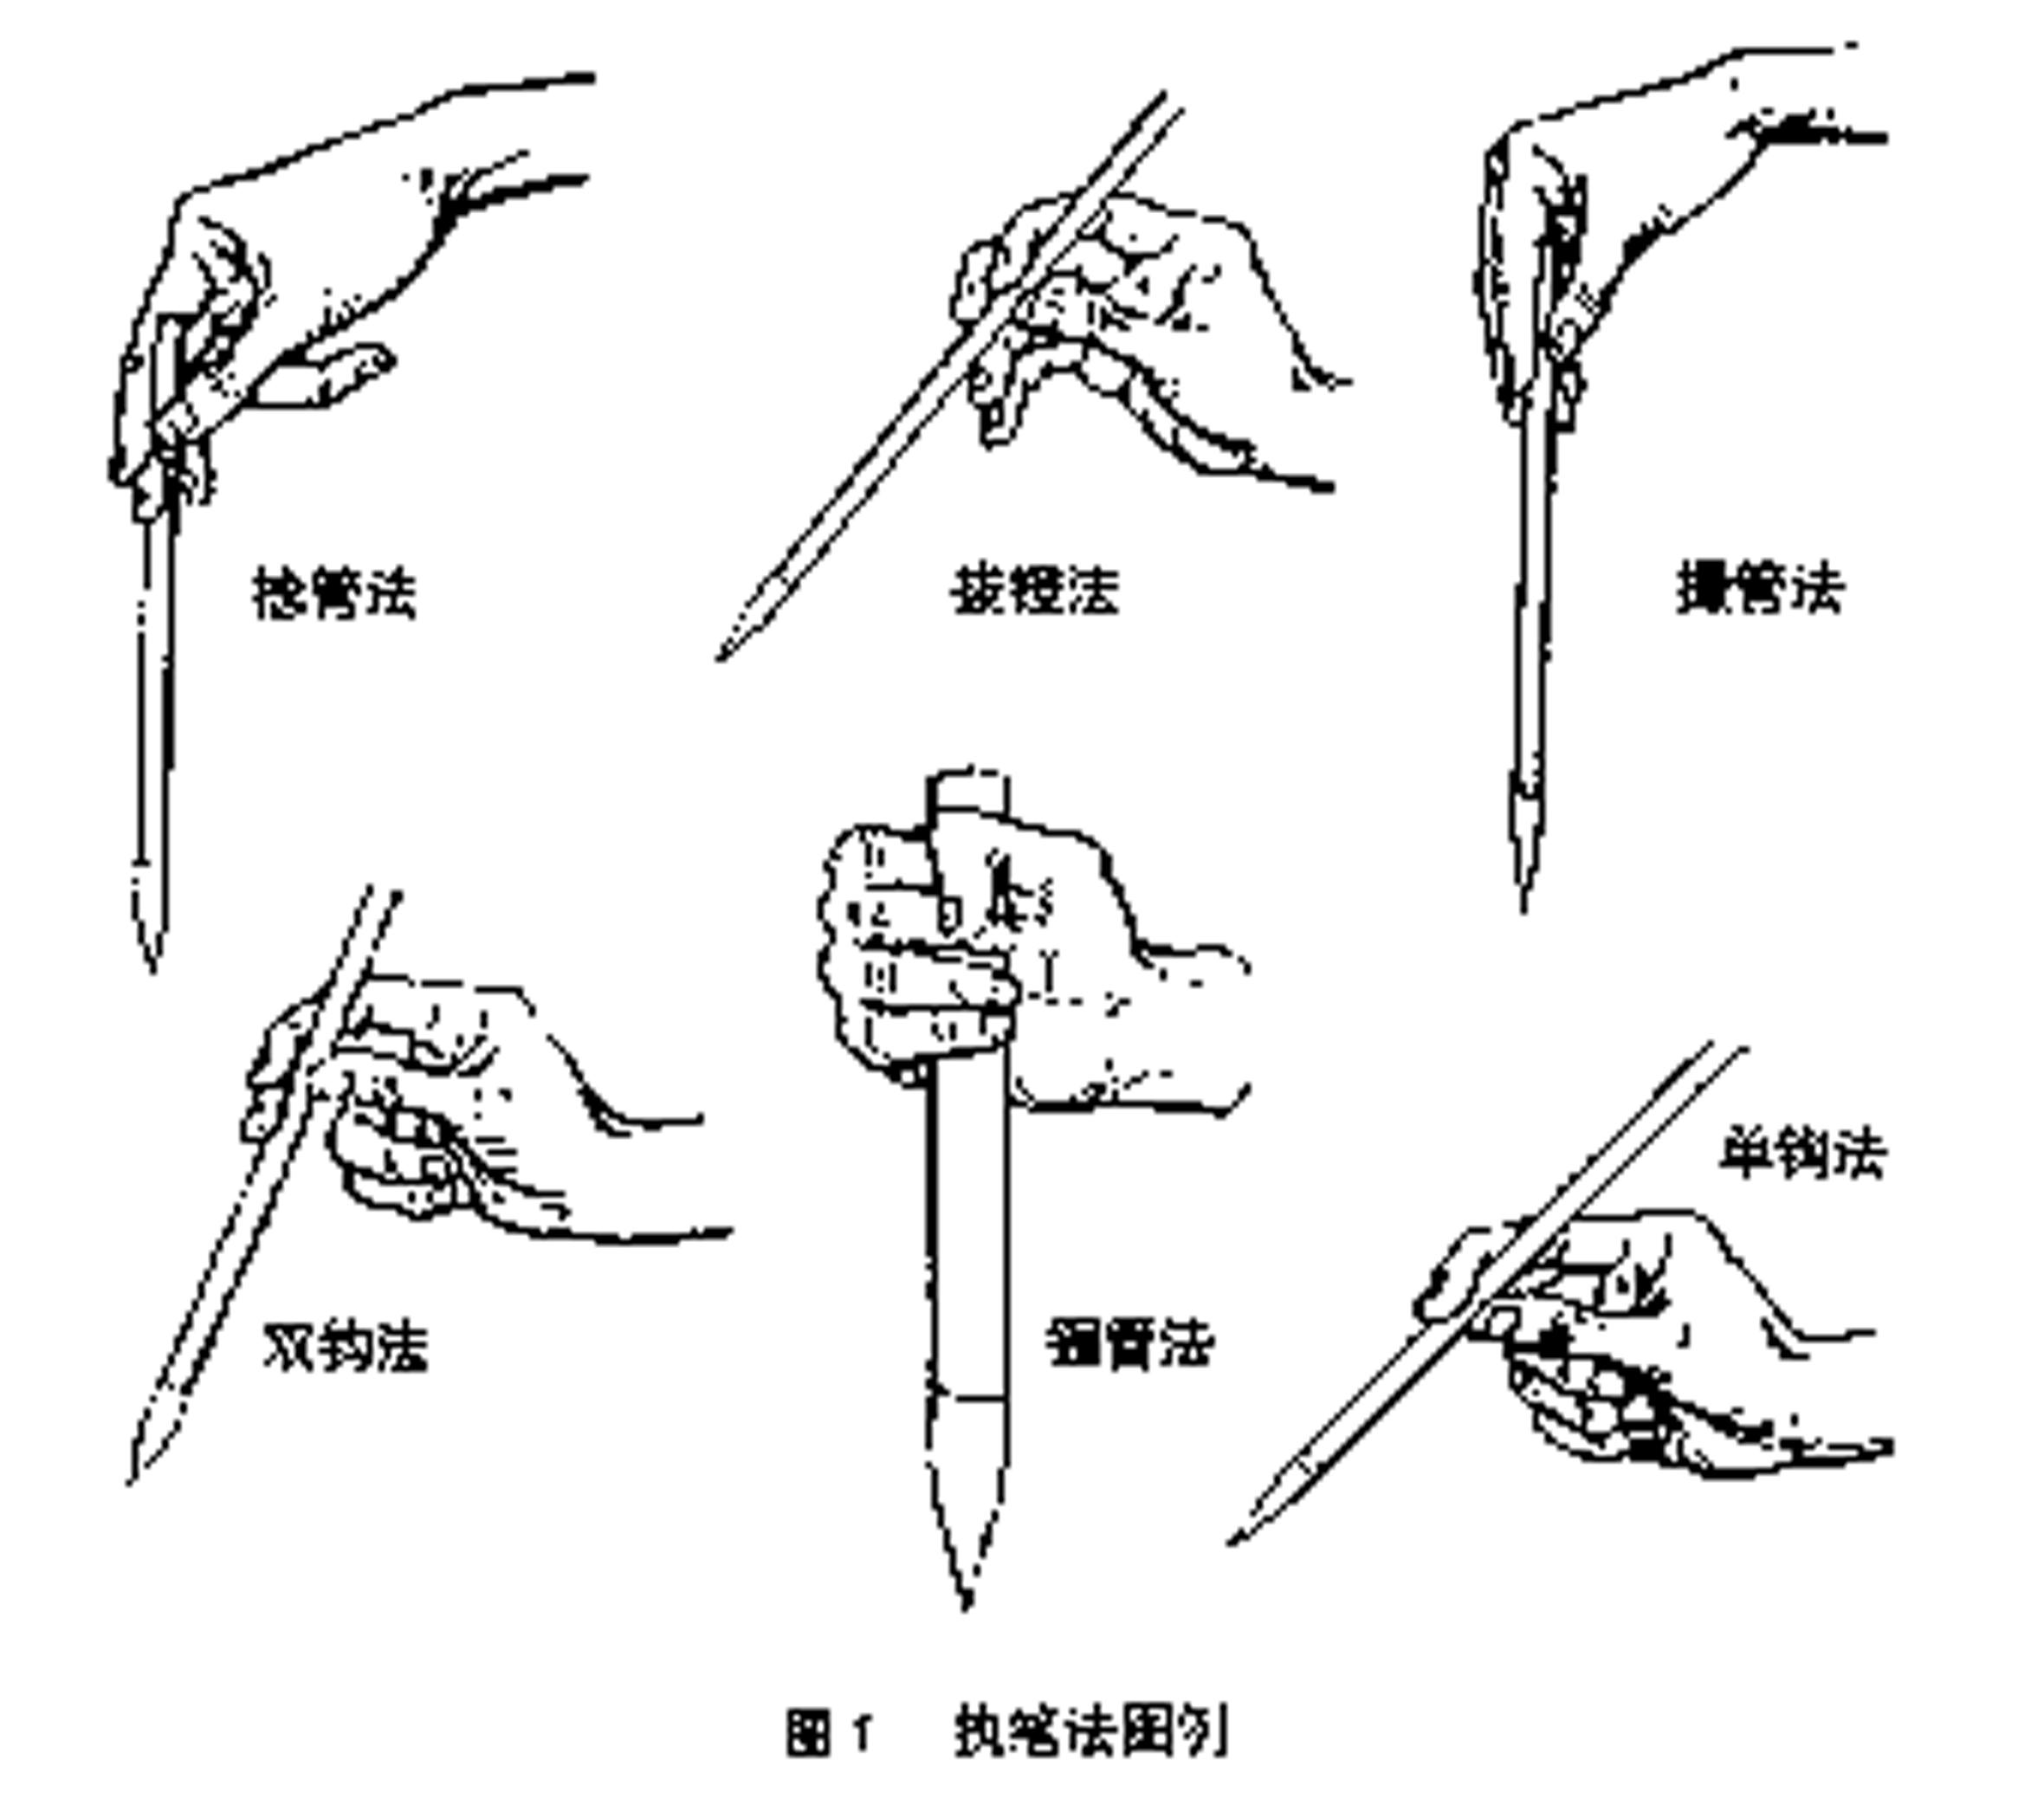 钢笔正确的握笔姿势步骤图（正确的执笔姿势和一些常见的错误执笔姿势） – 碳资讯